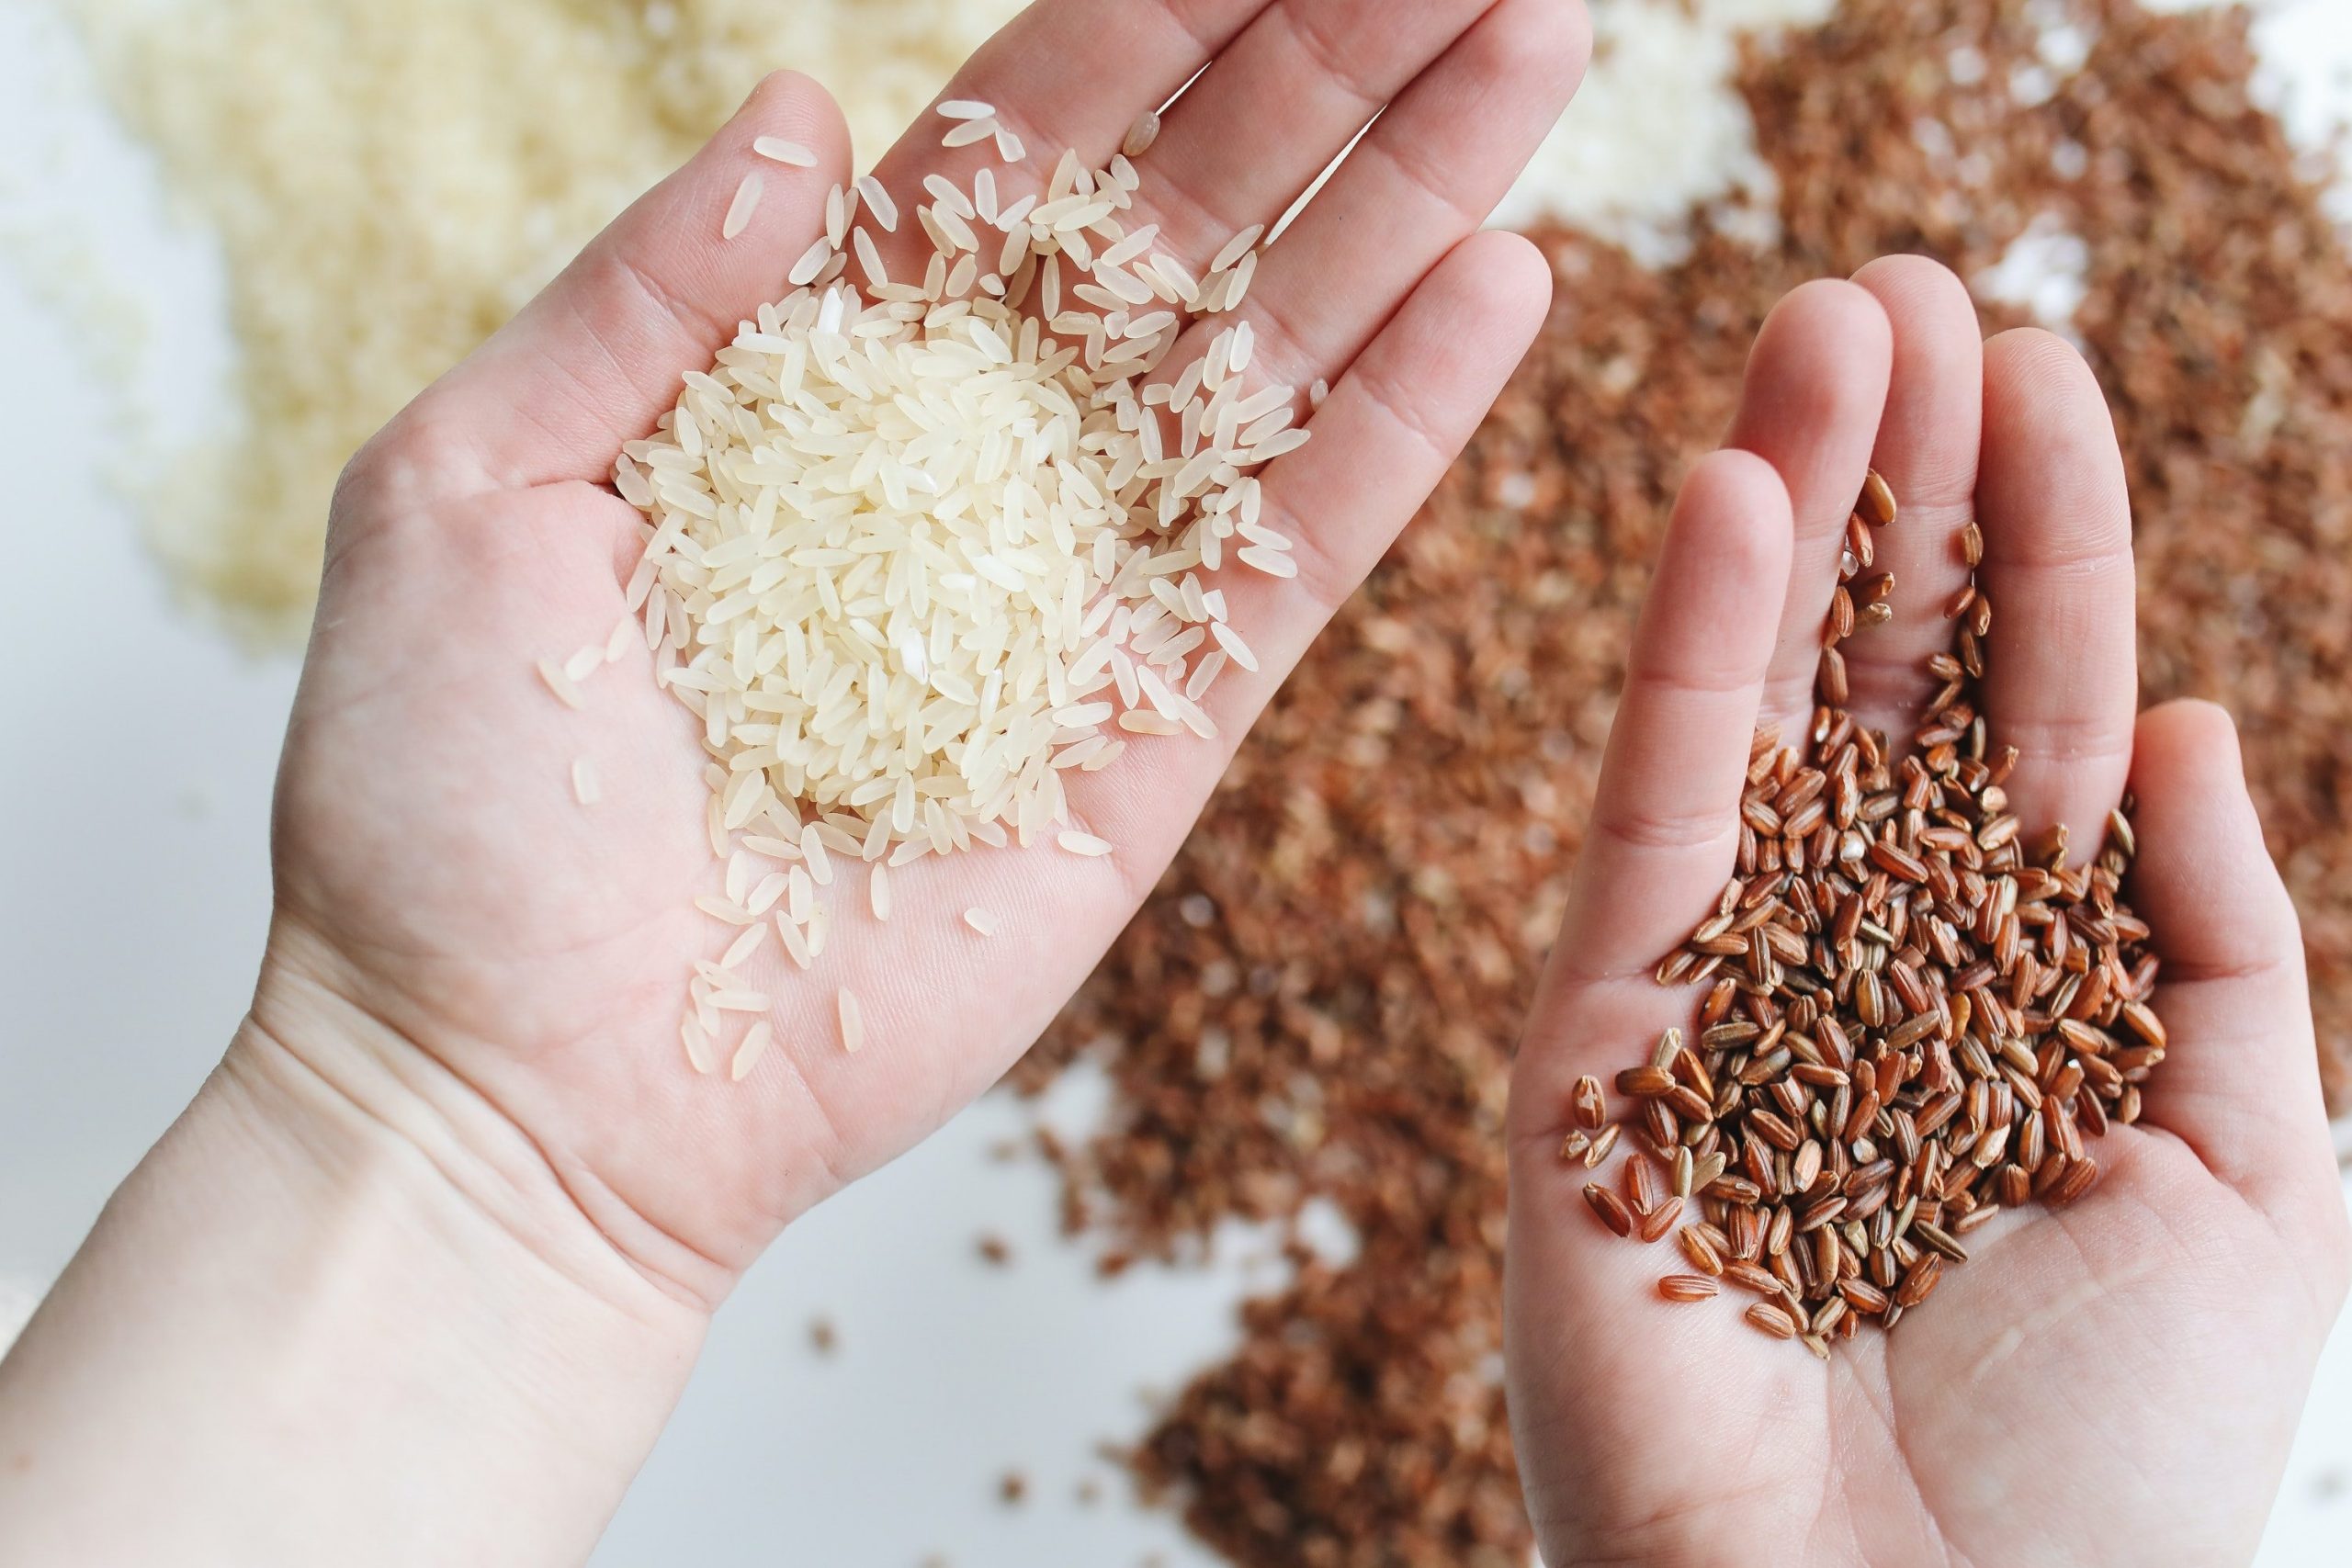 Weißer und brauner Reis sind nicht für Low-Carb und Keto geeignet